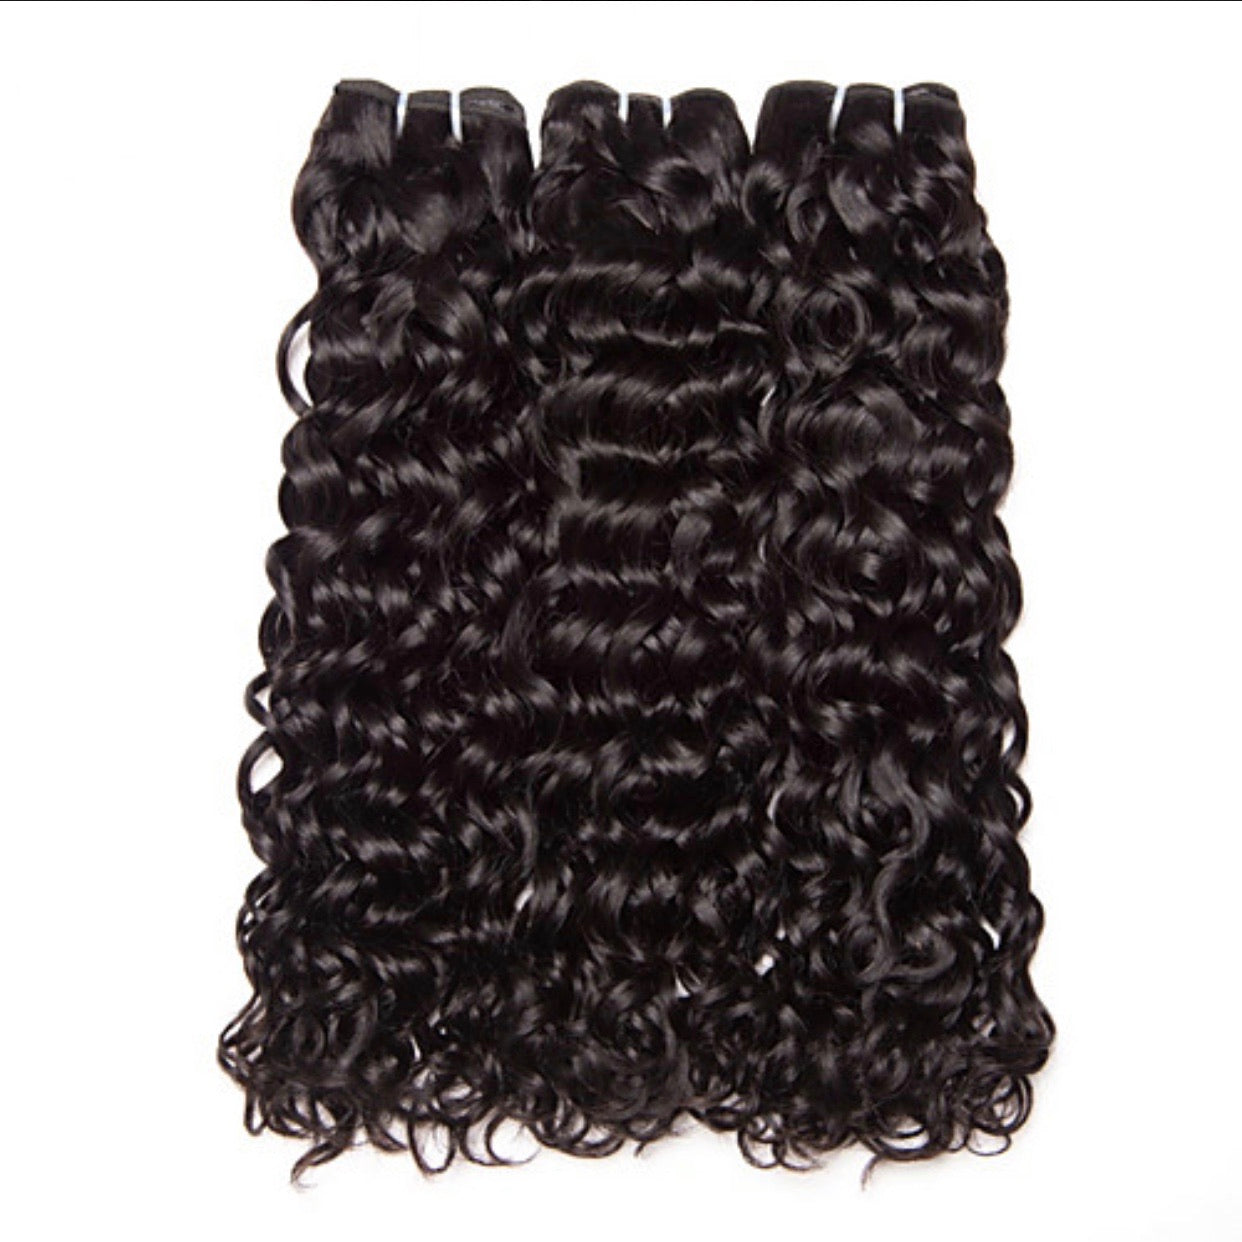 Water Wave Curly Human Hair Bundle Package